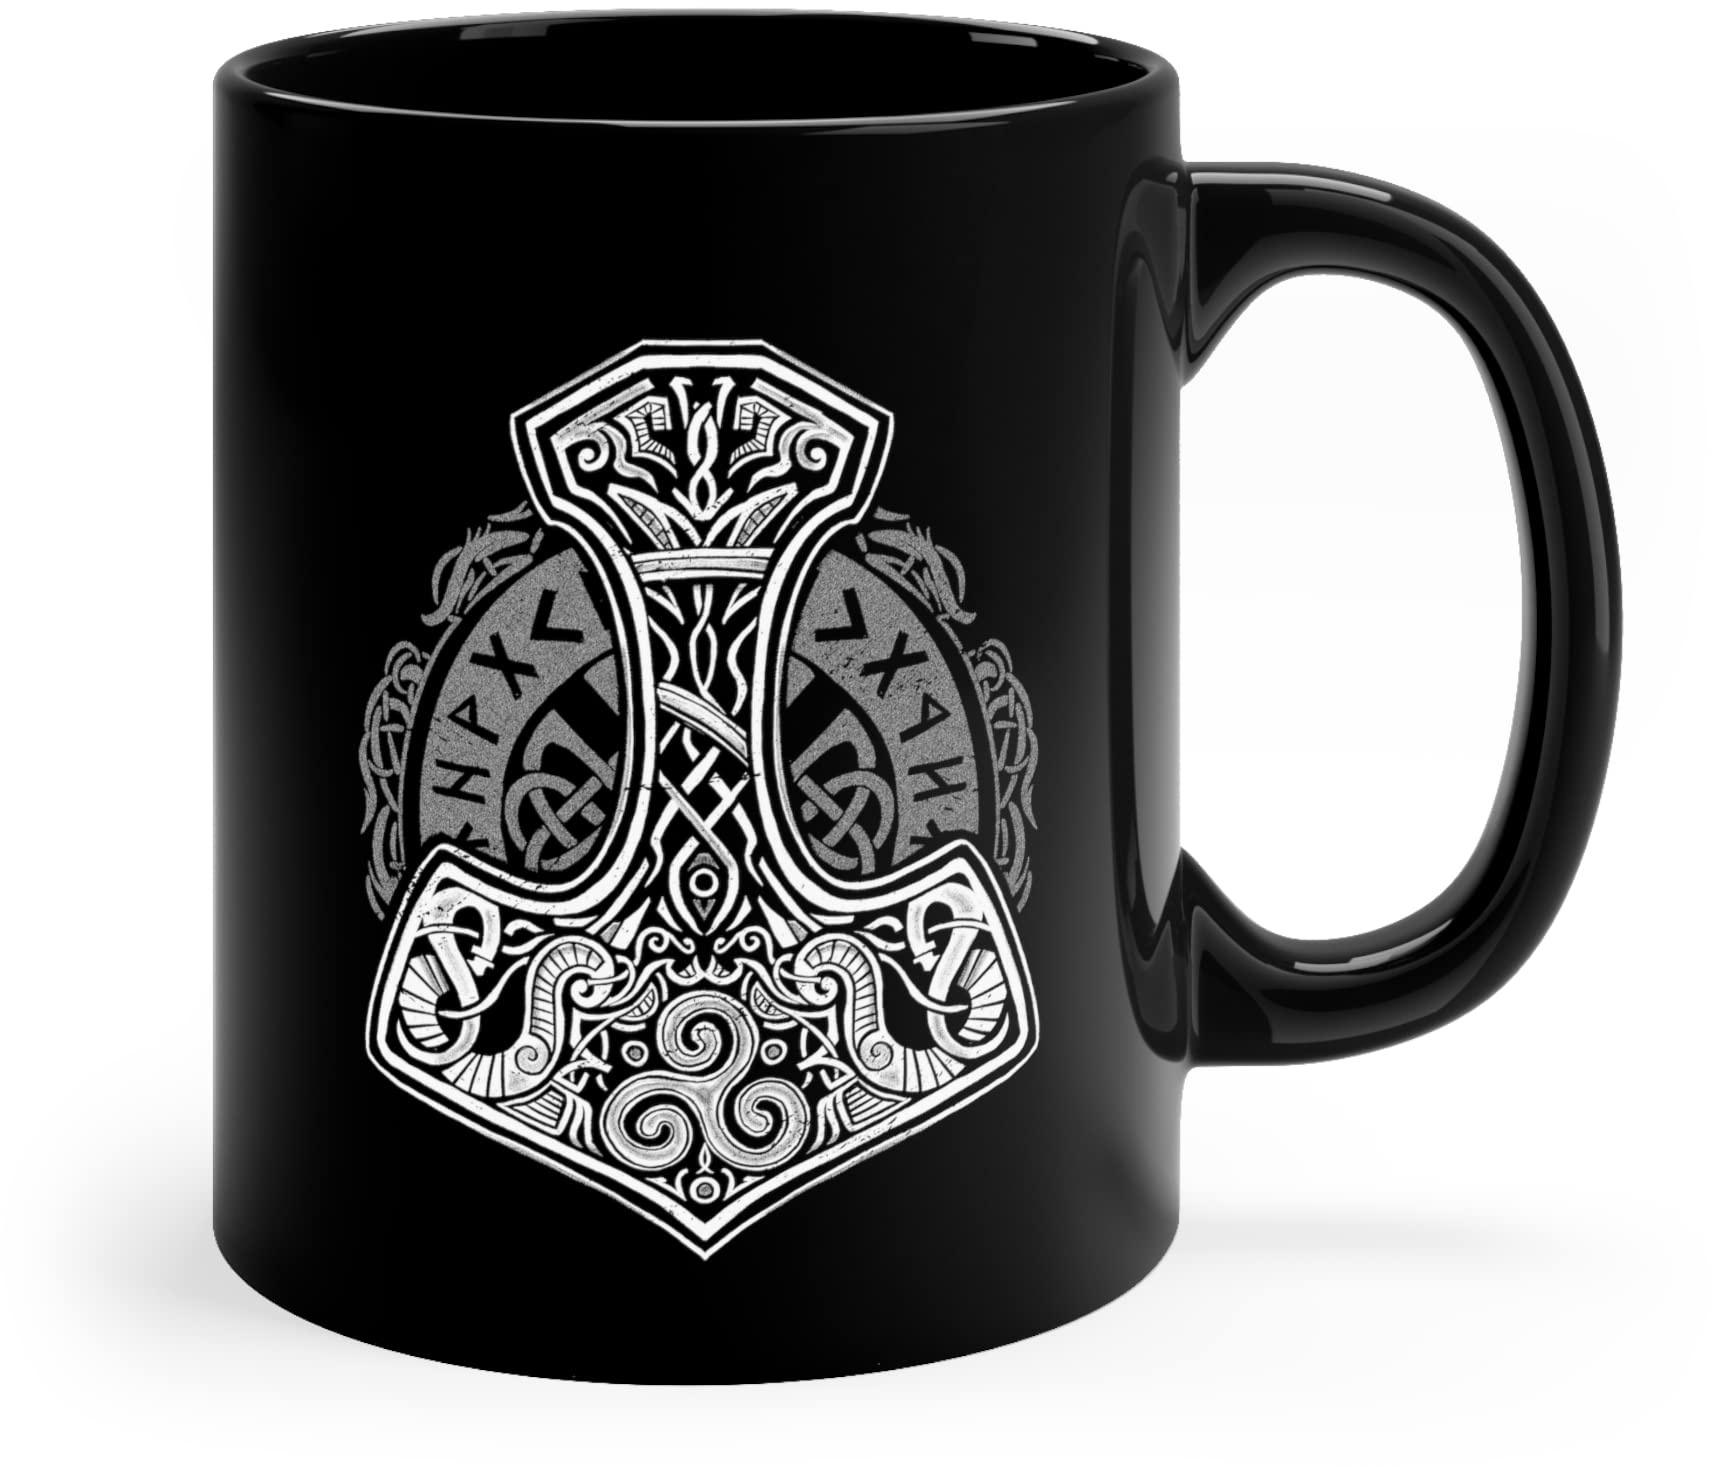 Wikinger Tasse In Schwarz Beidseitig Bedruckt - Thors Hammer Mjolnir Kaffeetasse Mit Nordischen Runen - Viking Dekoration